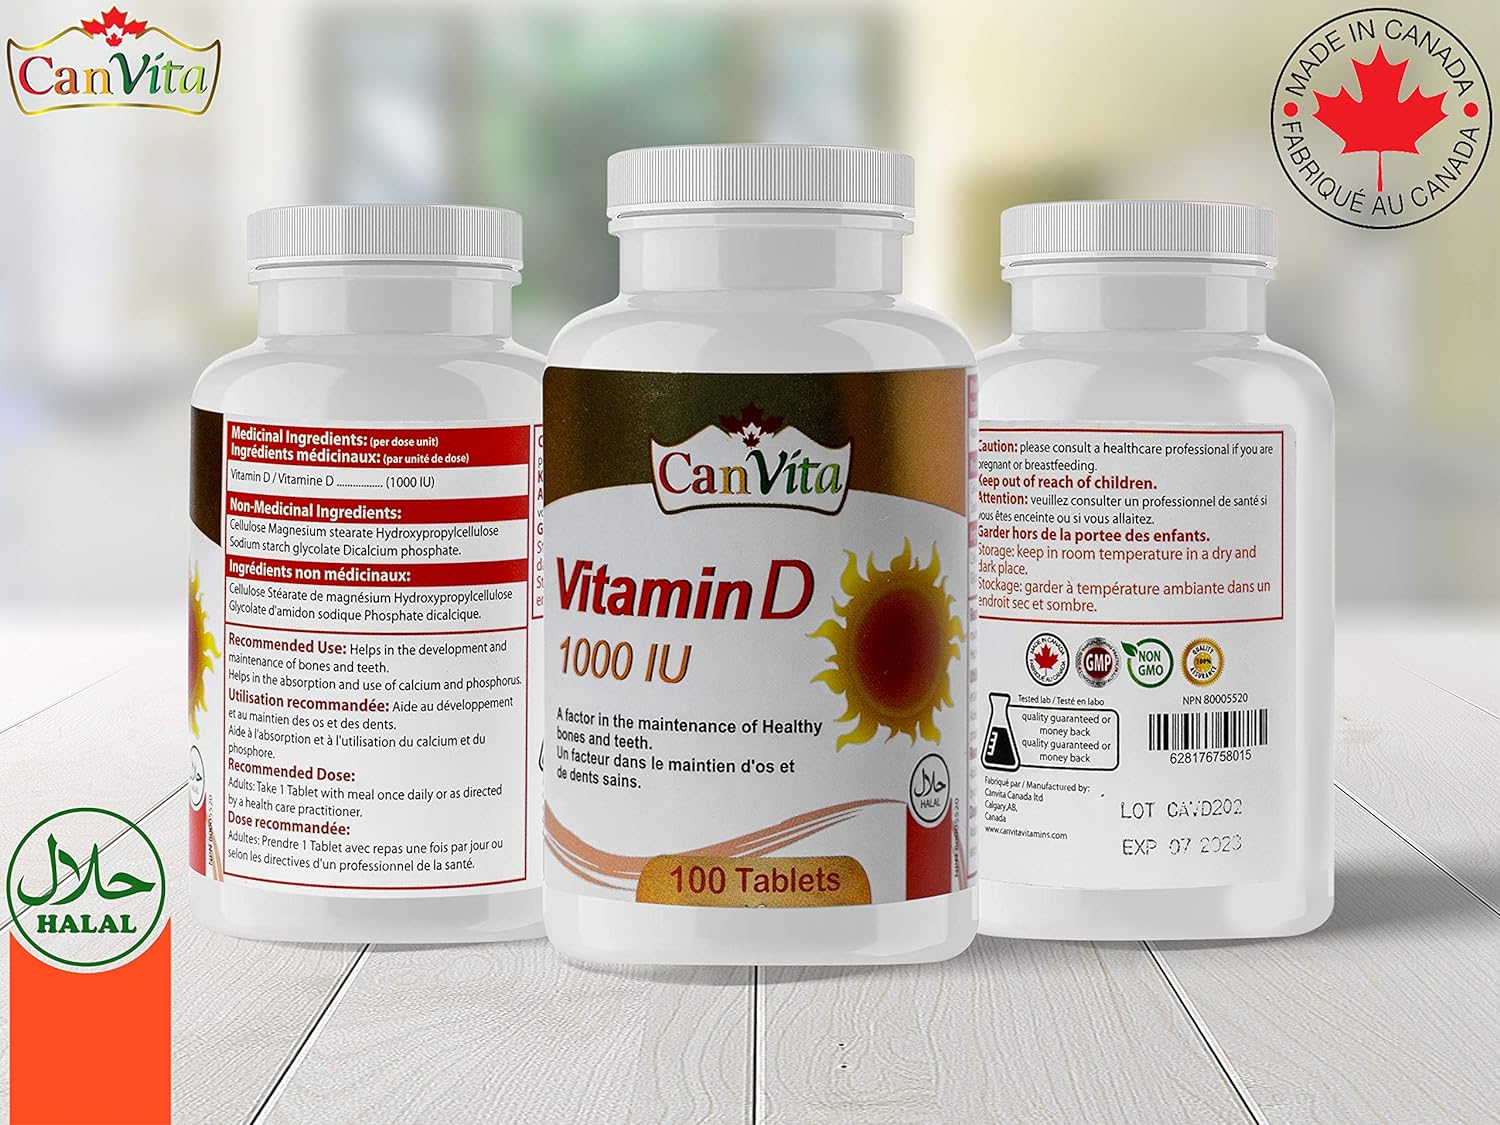 Vitamin D Halal Tablet (1000IU)